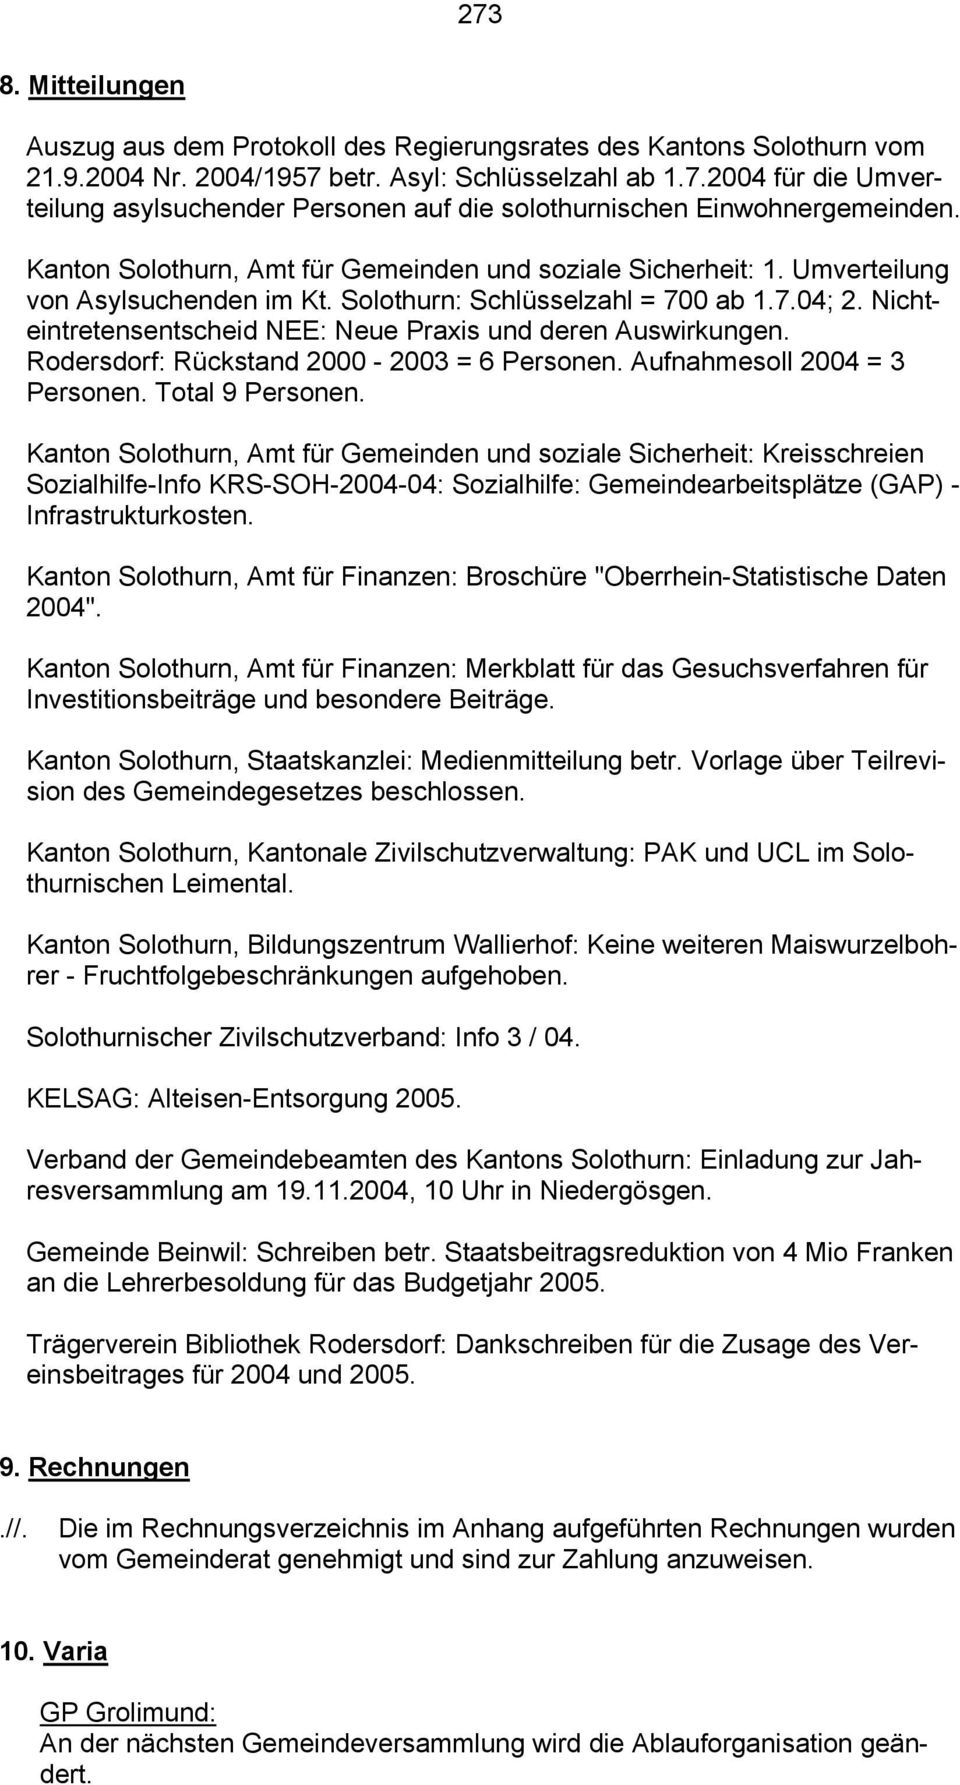 Nichteintretensentscheid NEE: Neue Praxis und deren Auswirkungen. Rodersdorf: Rückstand 2000-2003 = 6 Personen. Aufnahmesoll 2004 = 3 Personen. Total 9 Personen.